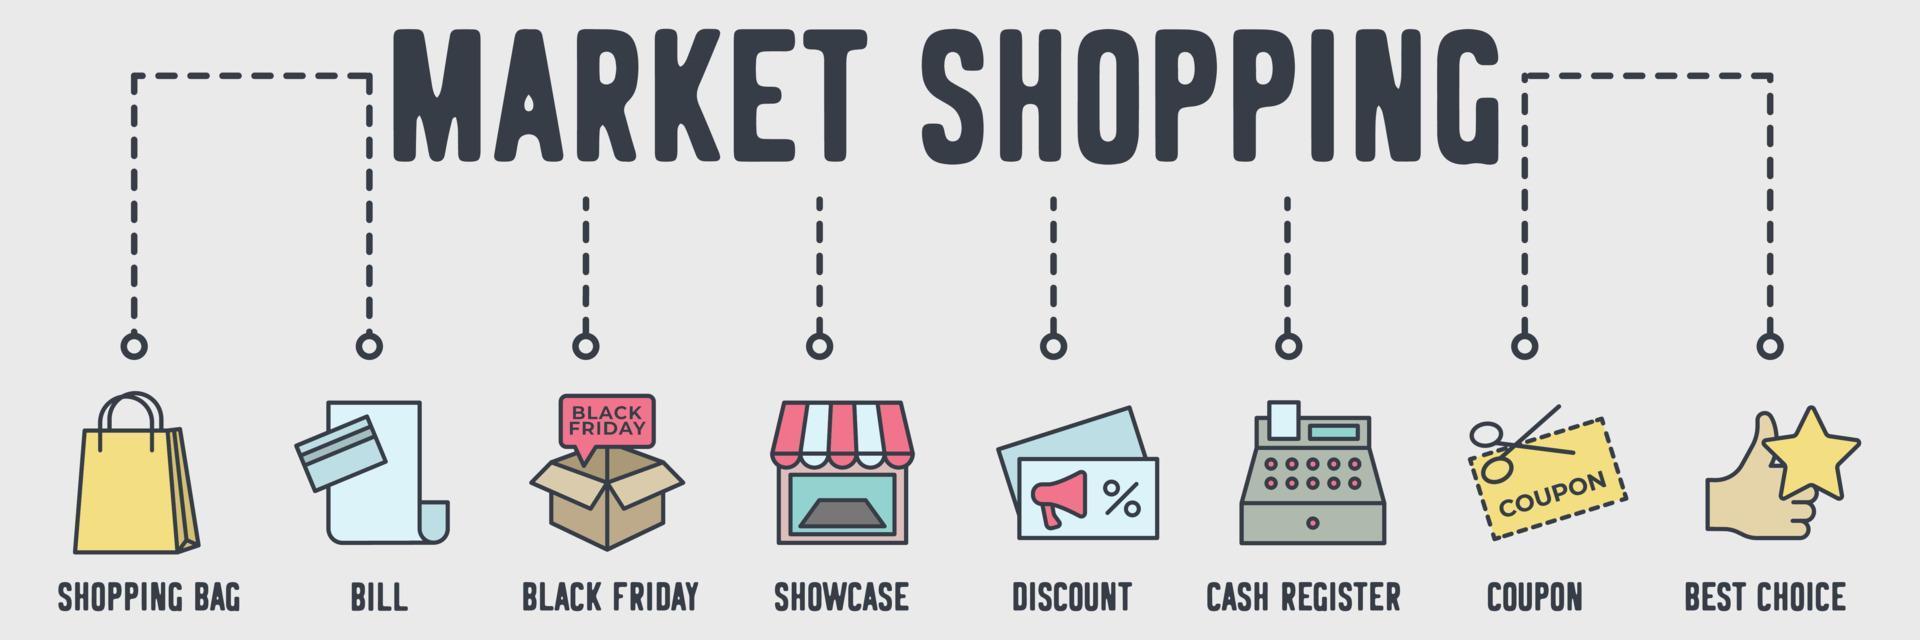 markt winkelen banner web pictogram. boodschappentas, rekening, zwarte vrijdag, showcase, korting, kassa, coupon, beste keuze vector illustratie concept.